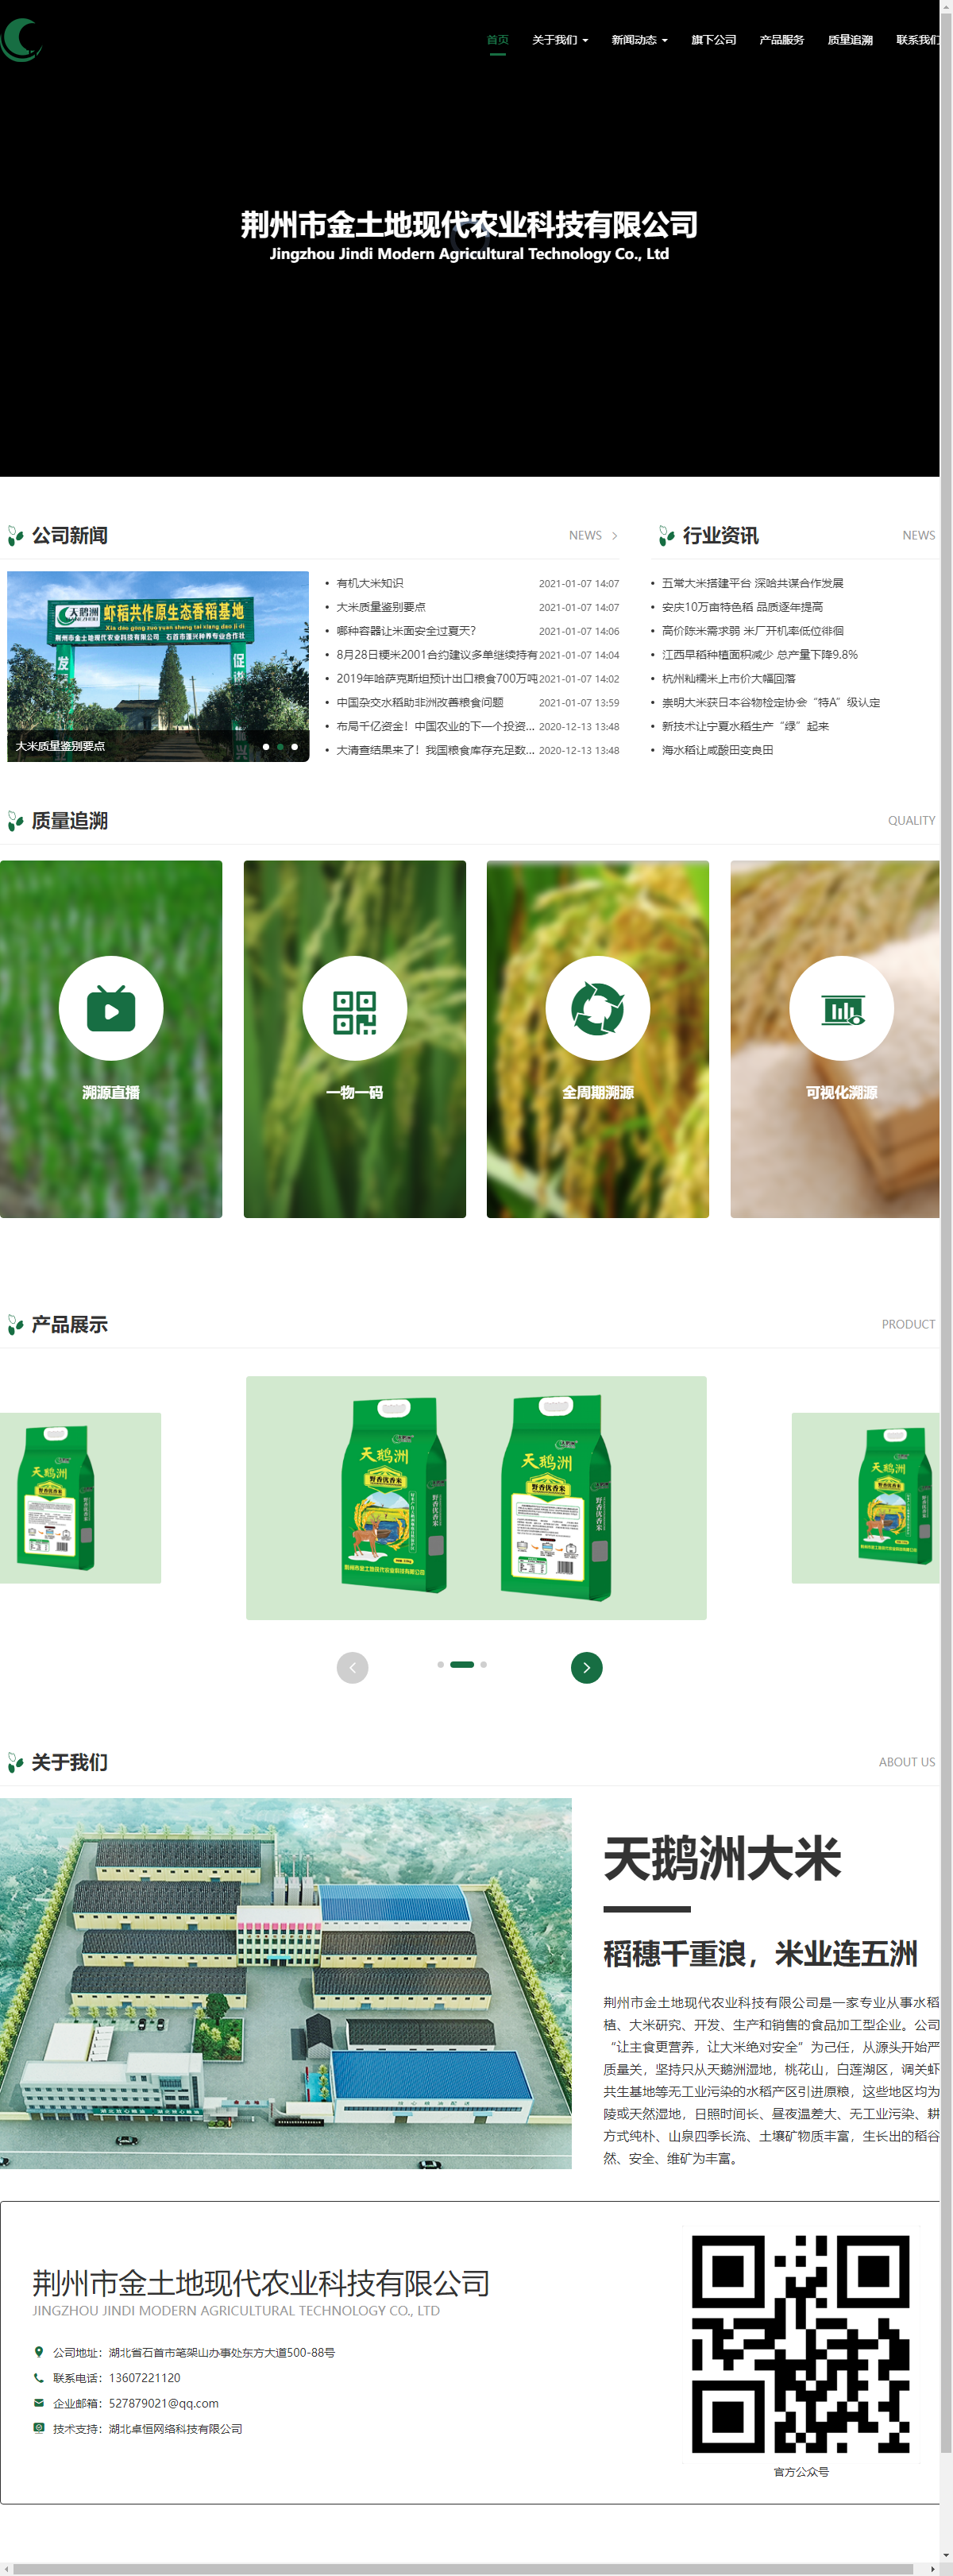 荆州市金土地现代农业科技有限公司网站案例